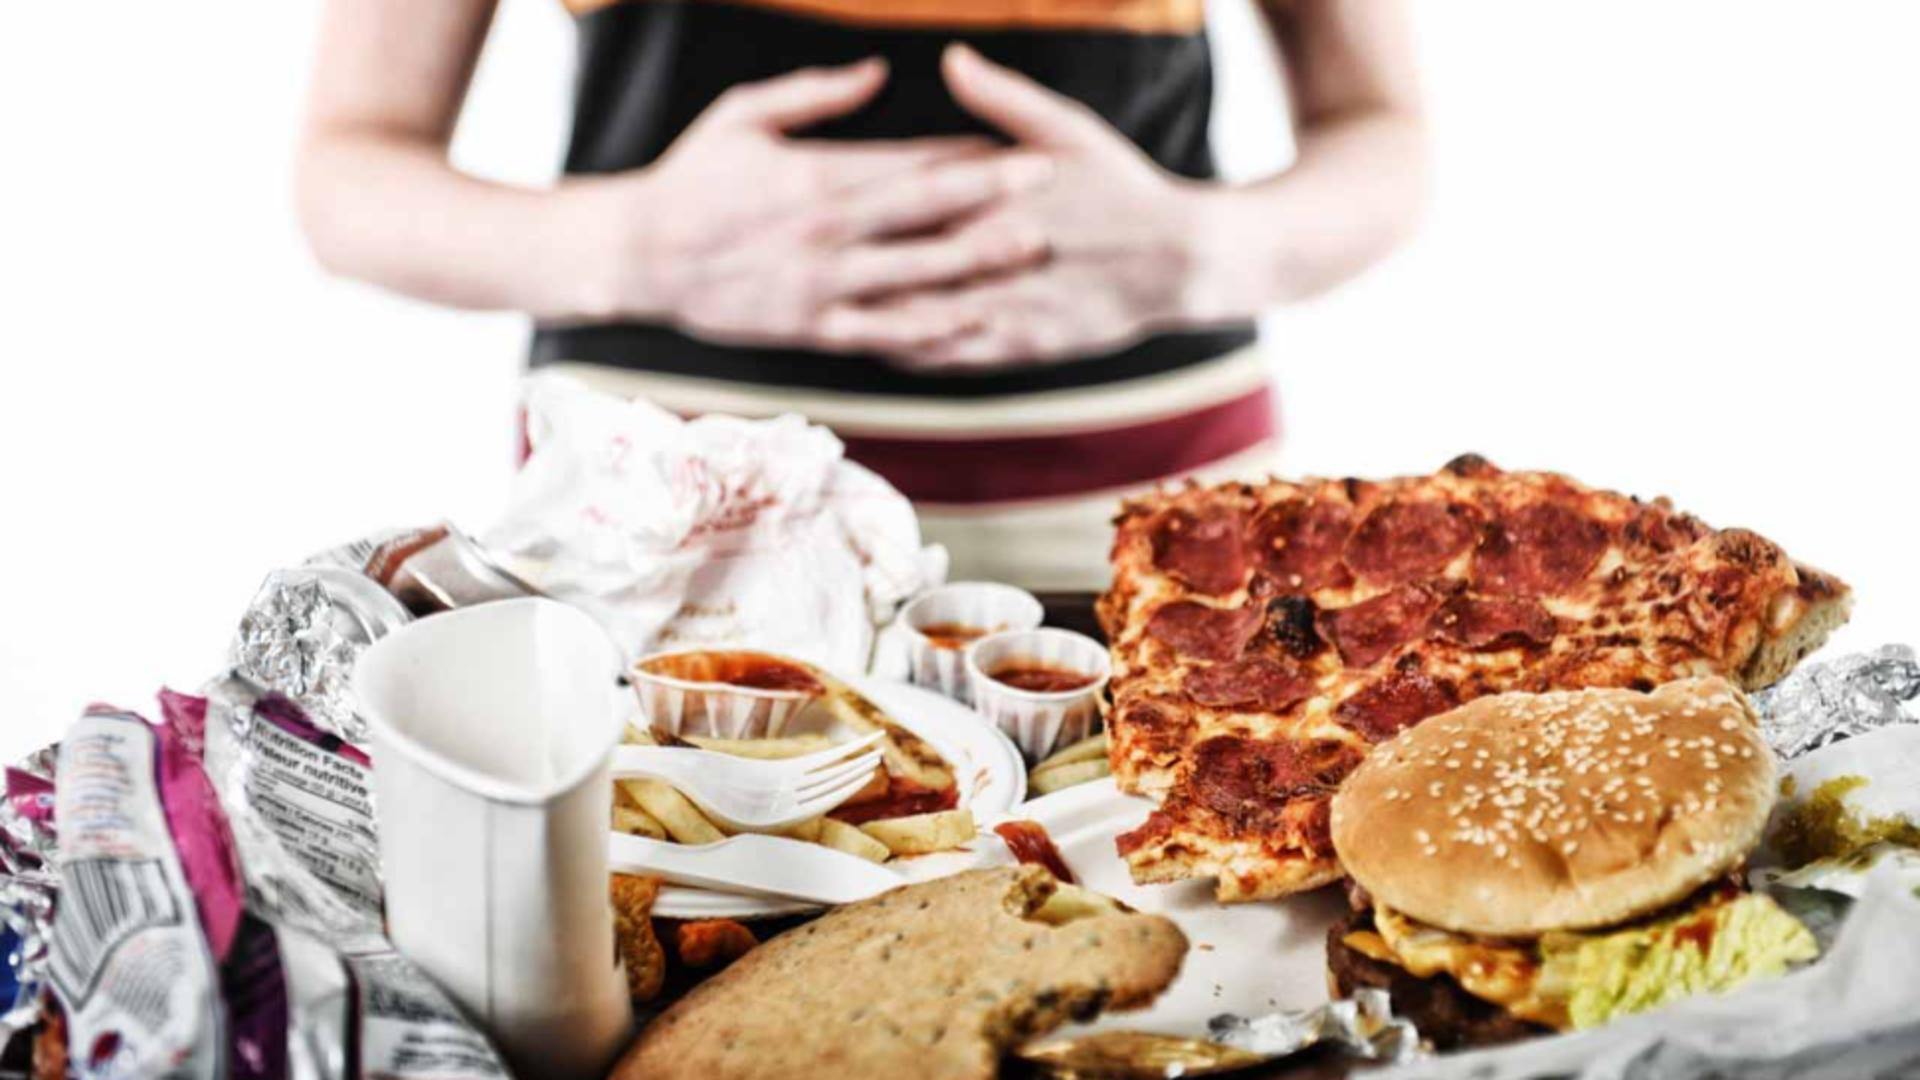 10 întrebări pe care să ți le pui atunci când îți vine să mănânci compulsiv